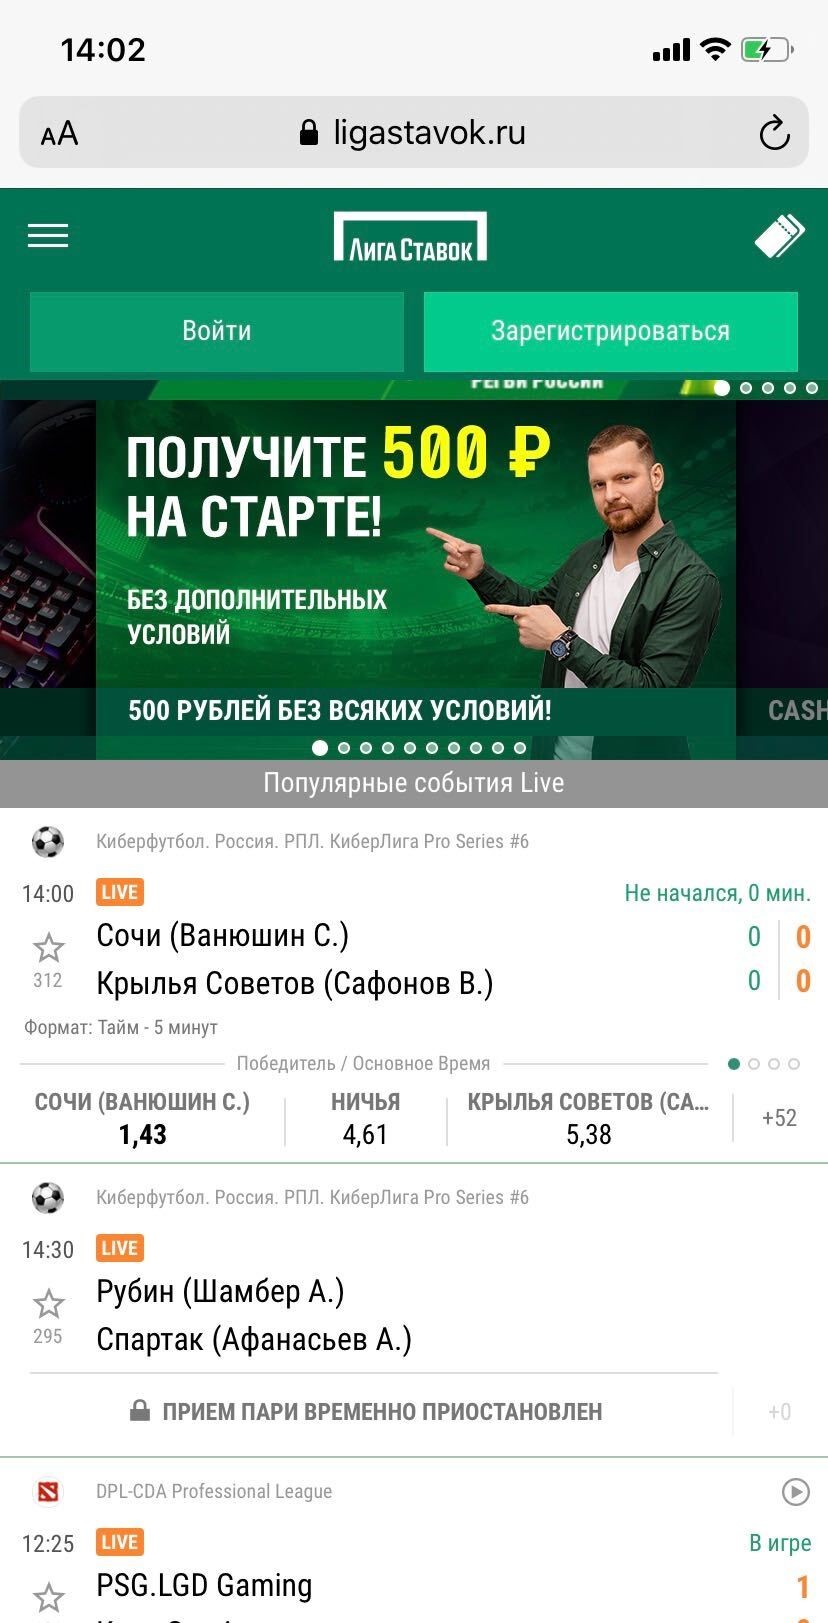 Правила букмекерских контор лига ставок смотреть финал по покеру 2013 смотреть онлайн на русском языке